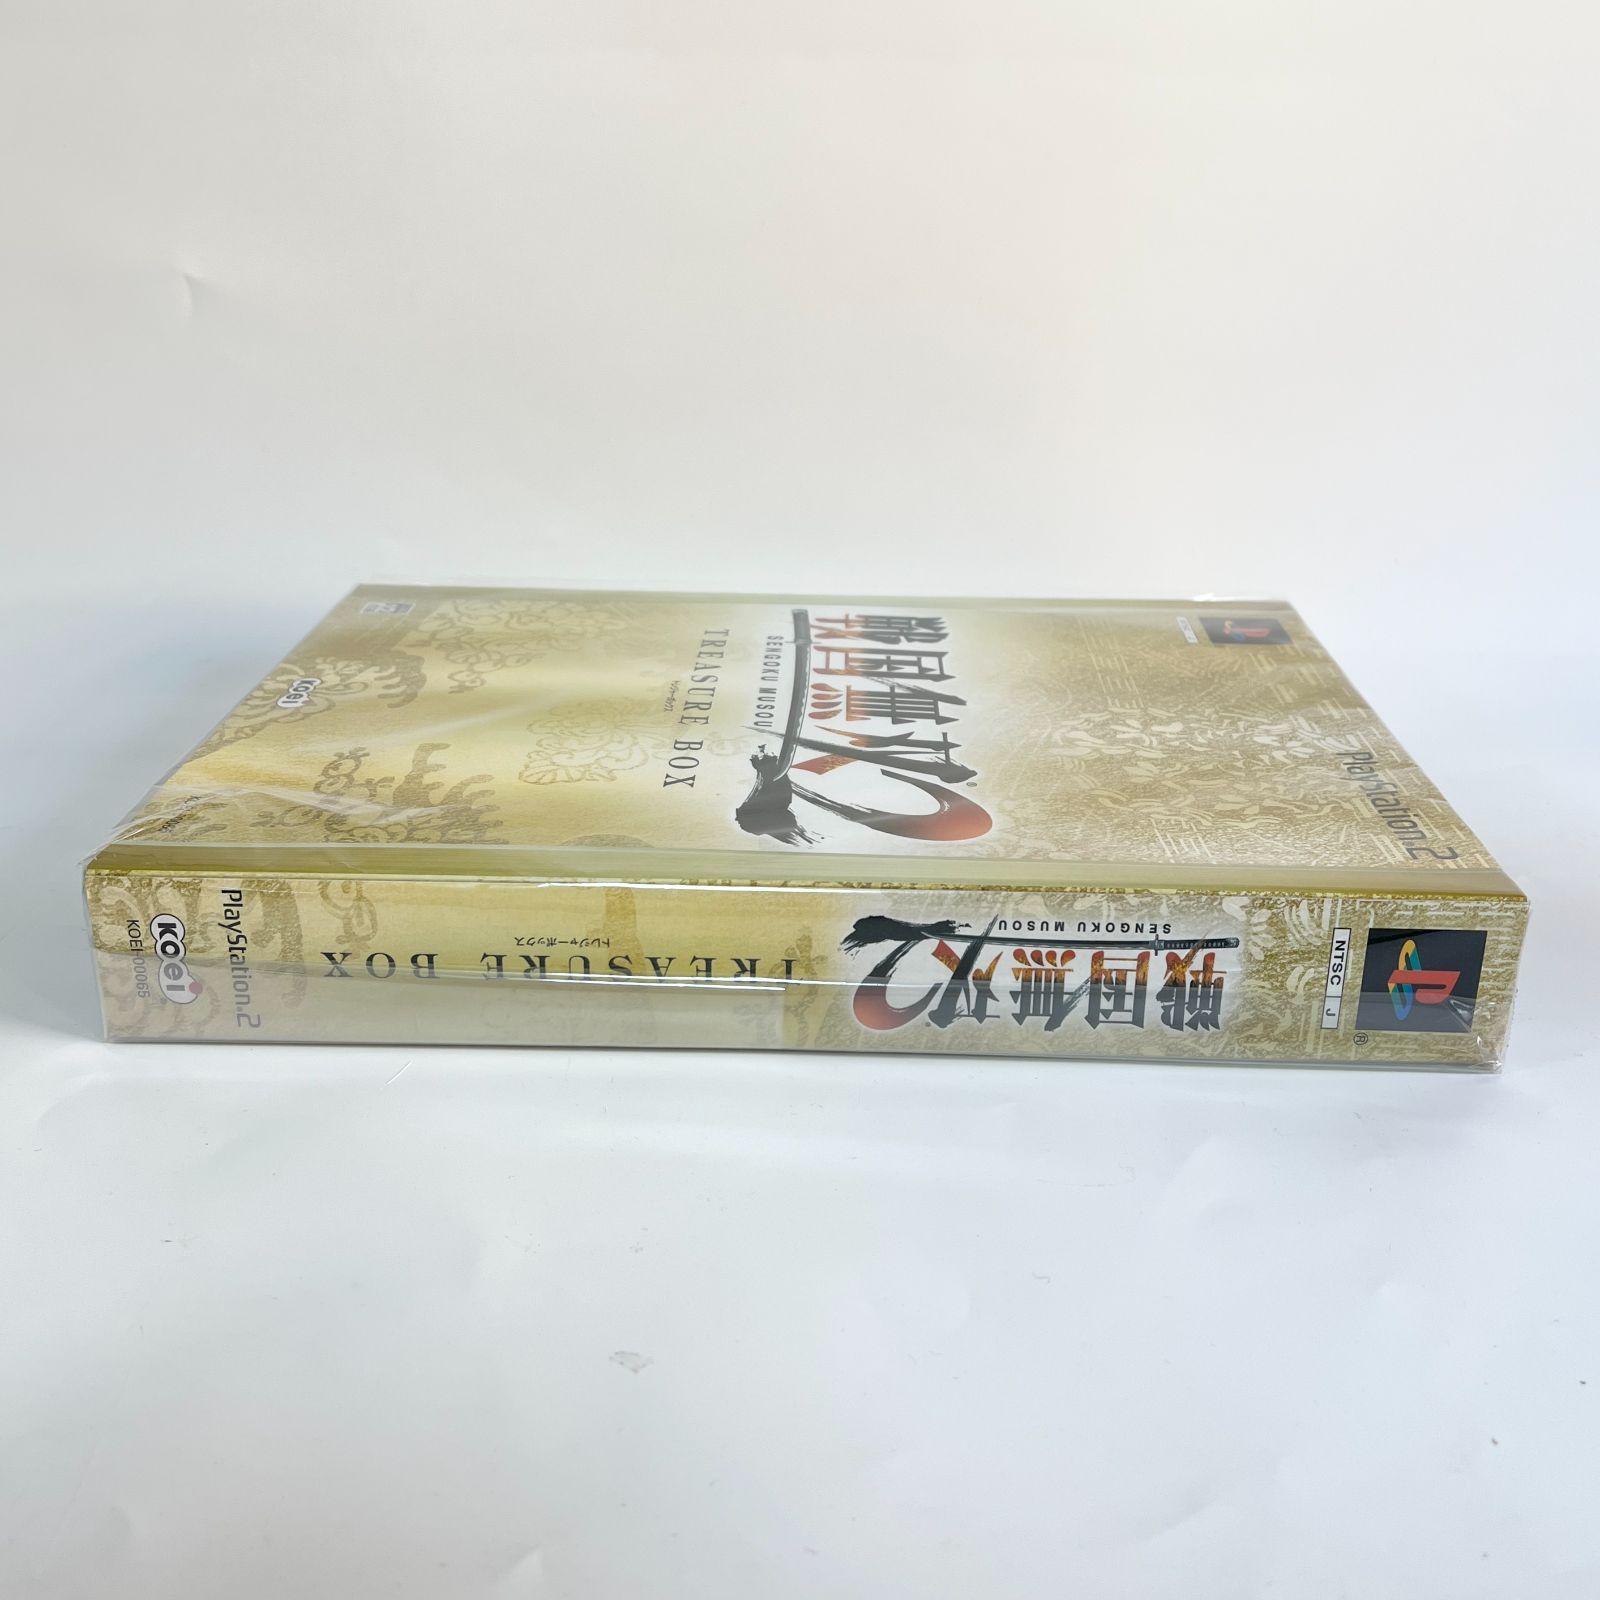 PS2 戦国無双2 TREASURE BOX(トレジャーボックス/限定版) - メルカリ